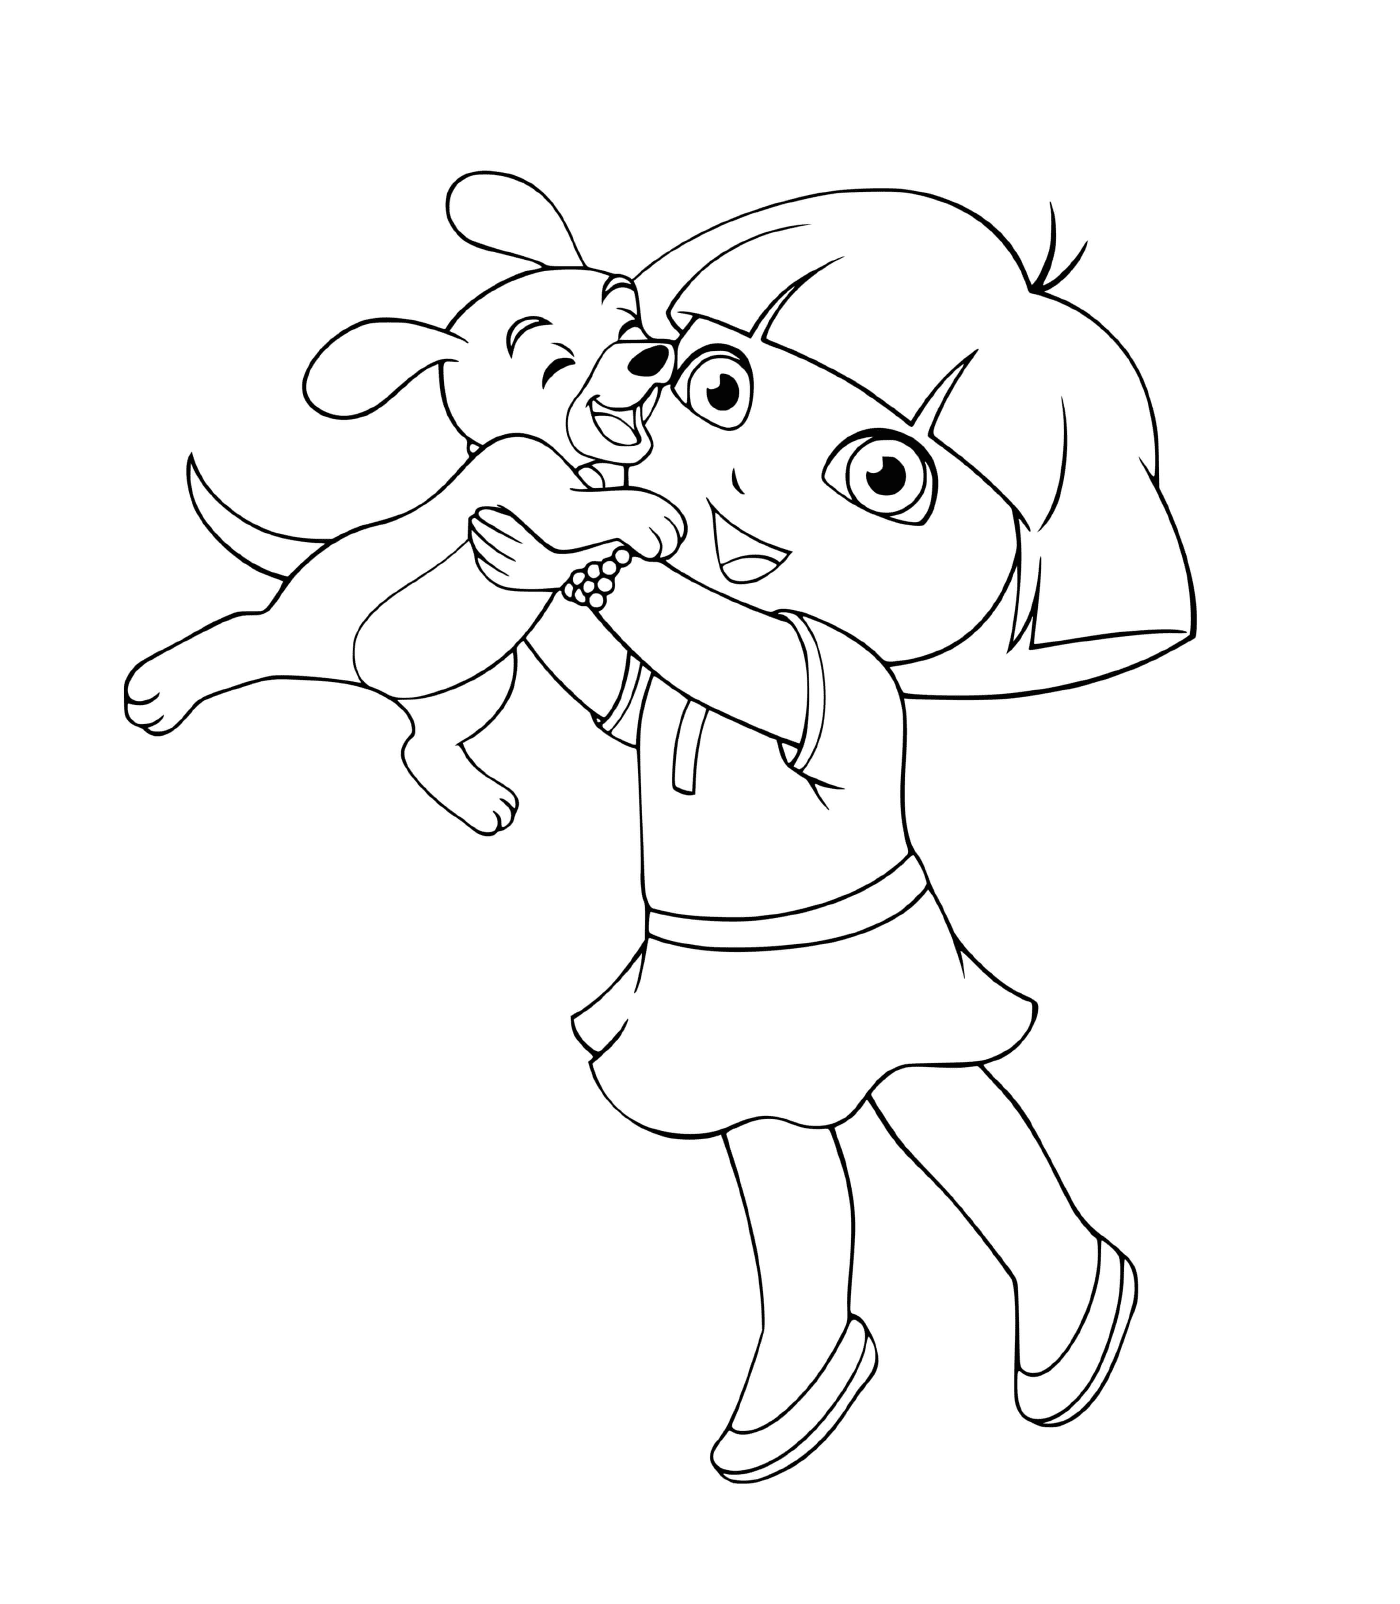  Dora bacia il suo cucciolo con tenerezza 